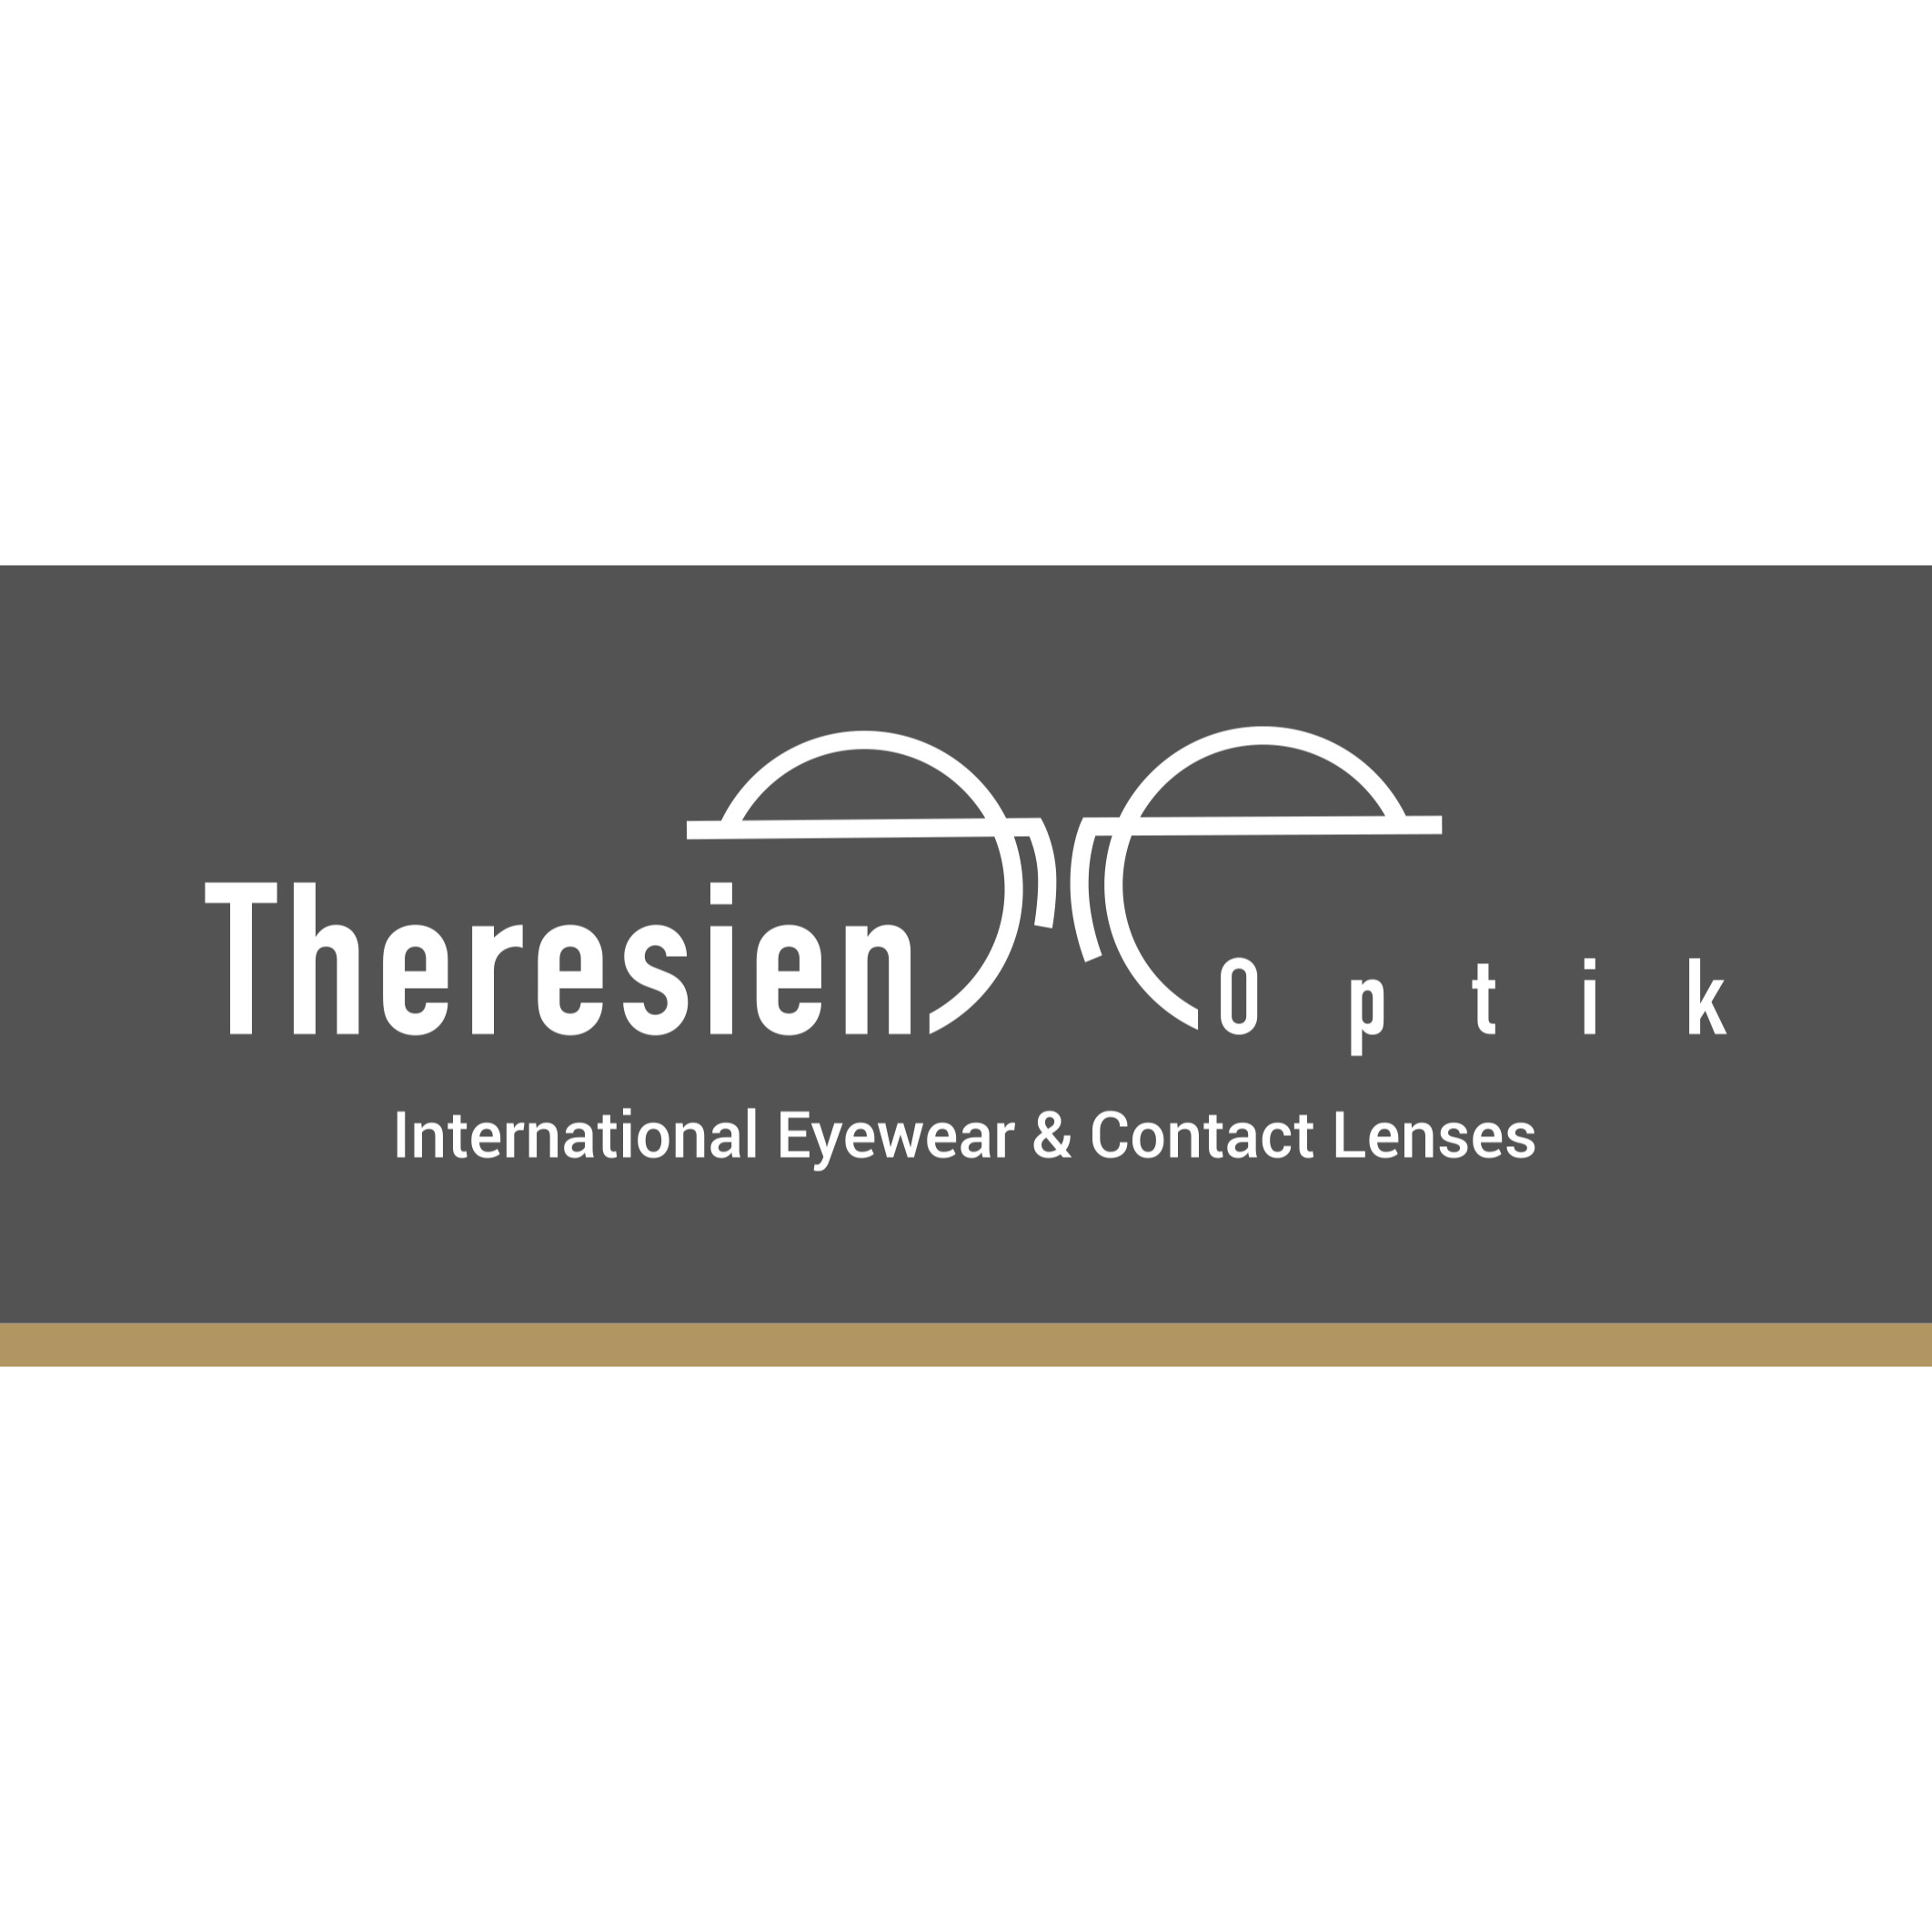 Theresienoptik - Ihr Fashion- & Fachoptiker in Innsbruck Logo